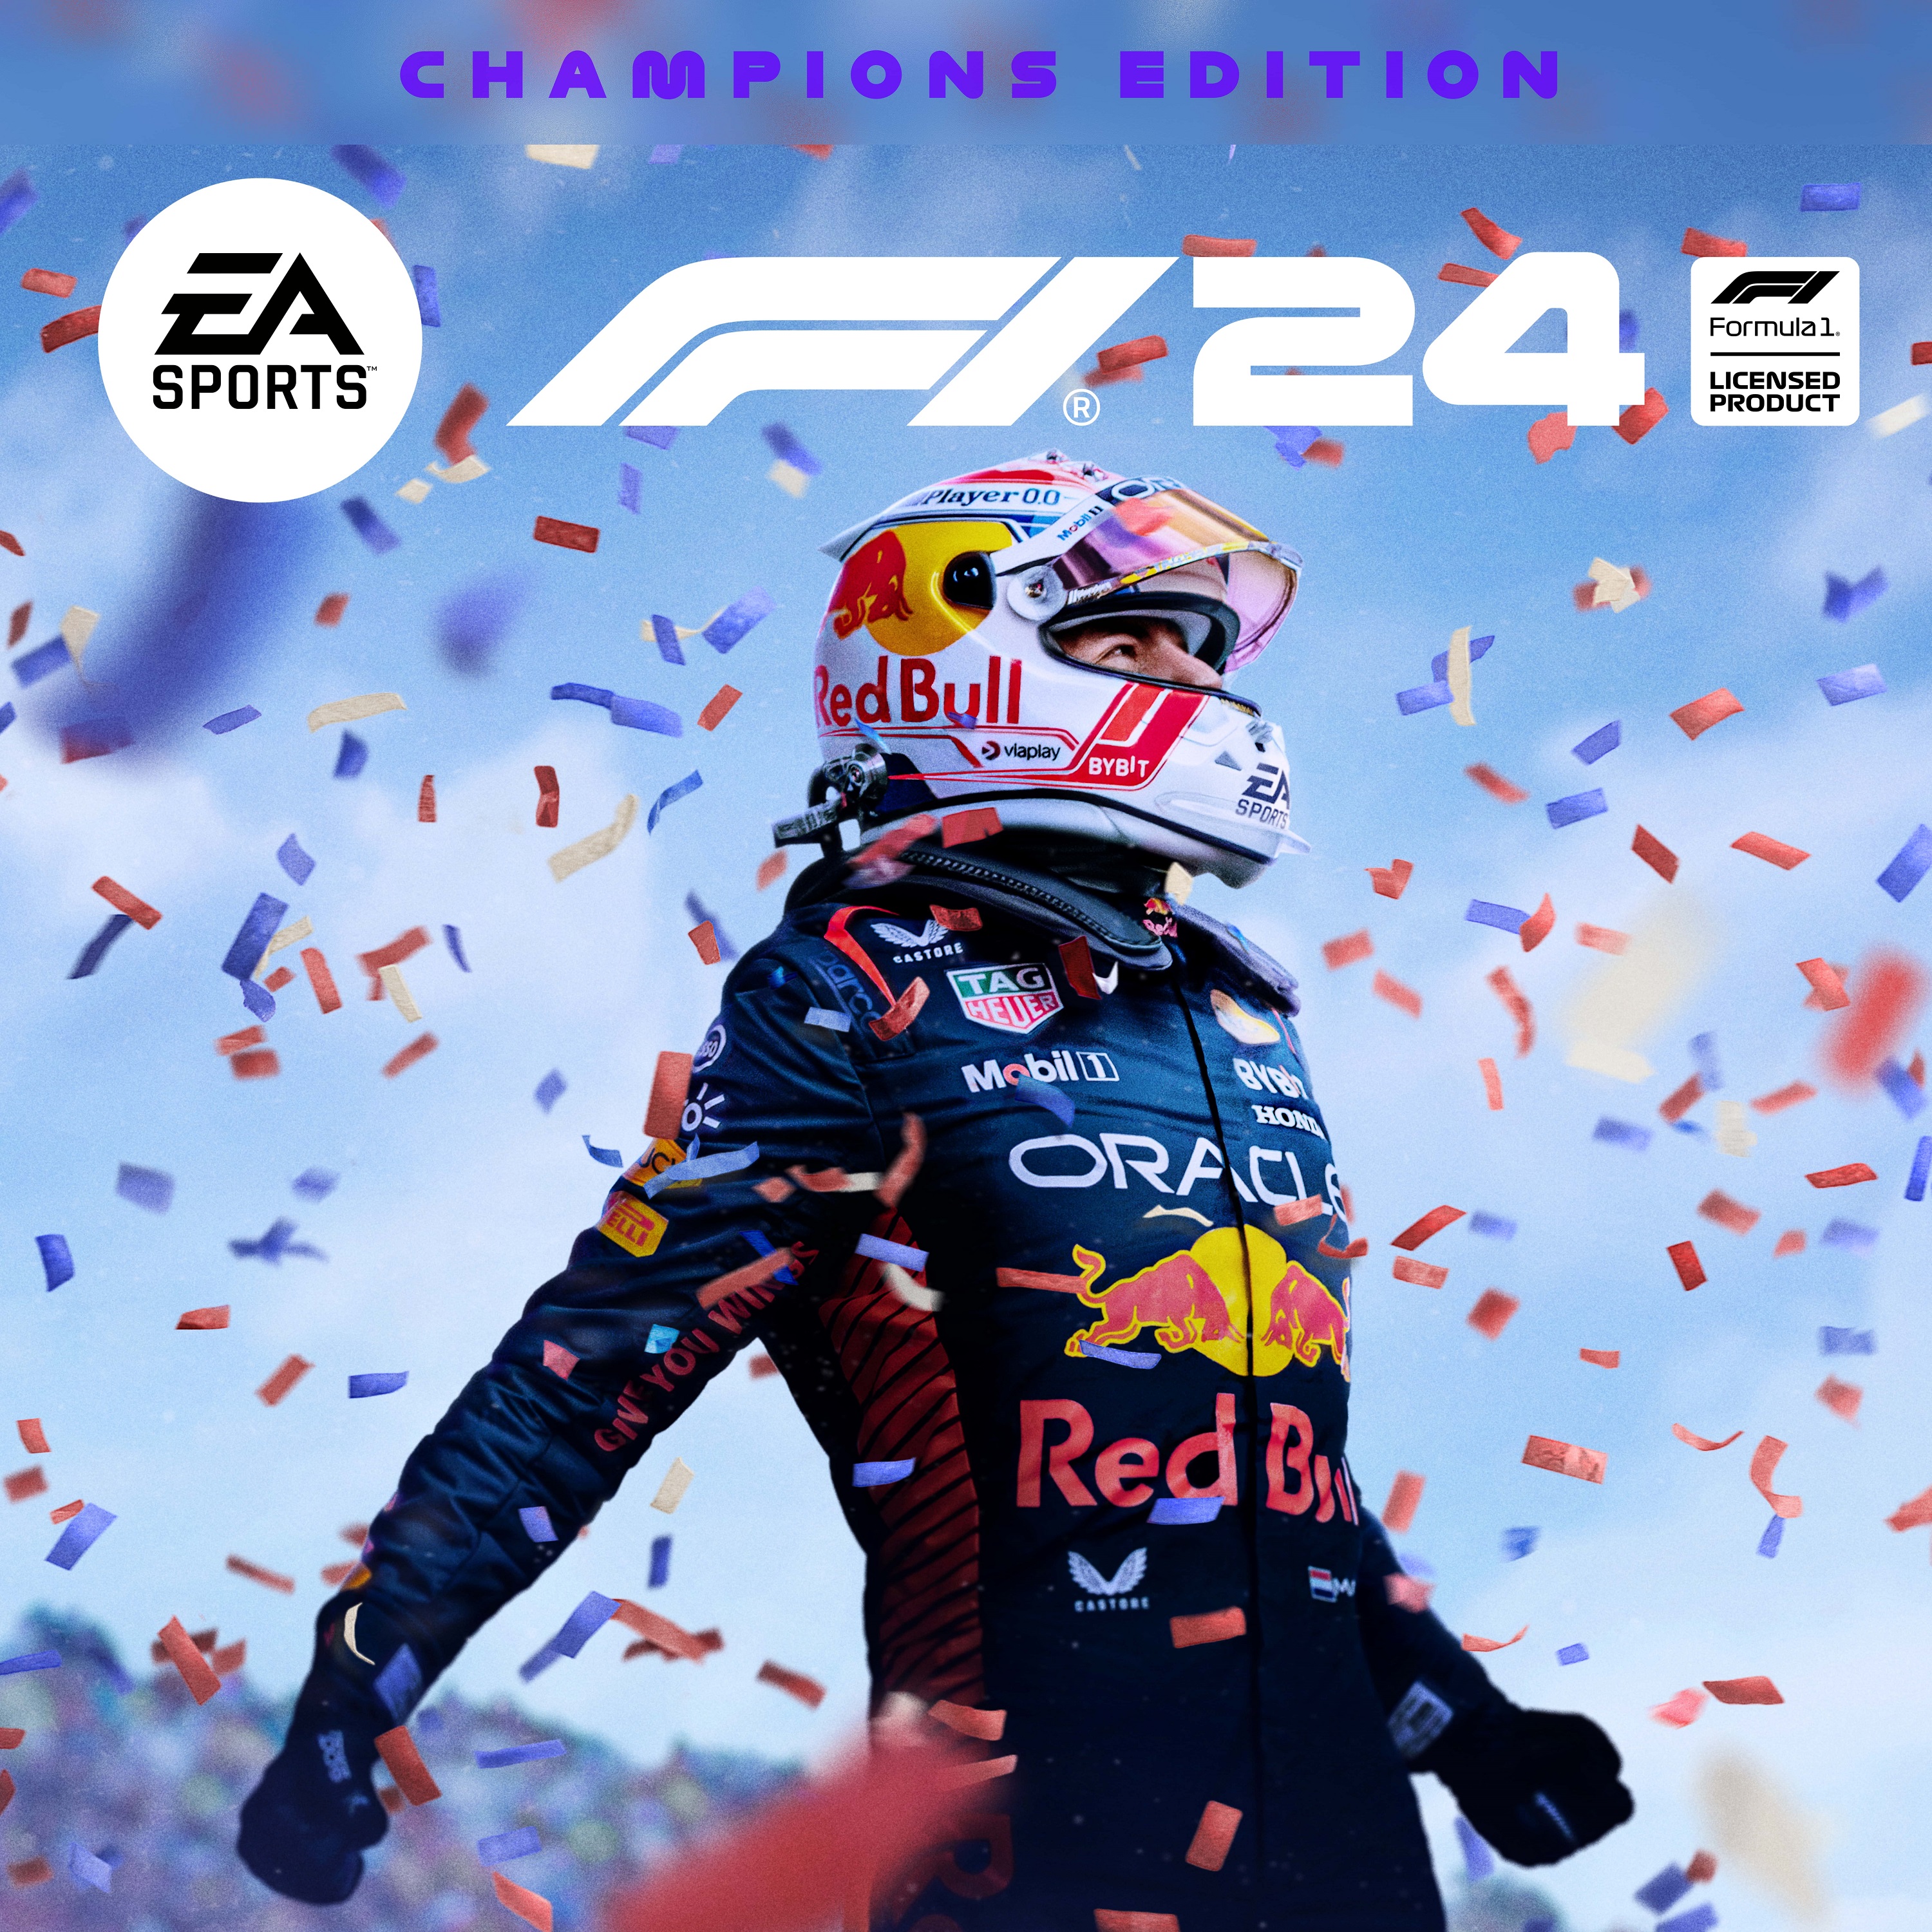 F1 24 edition champion 2